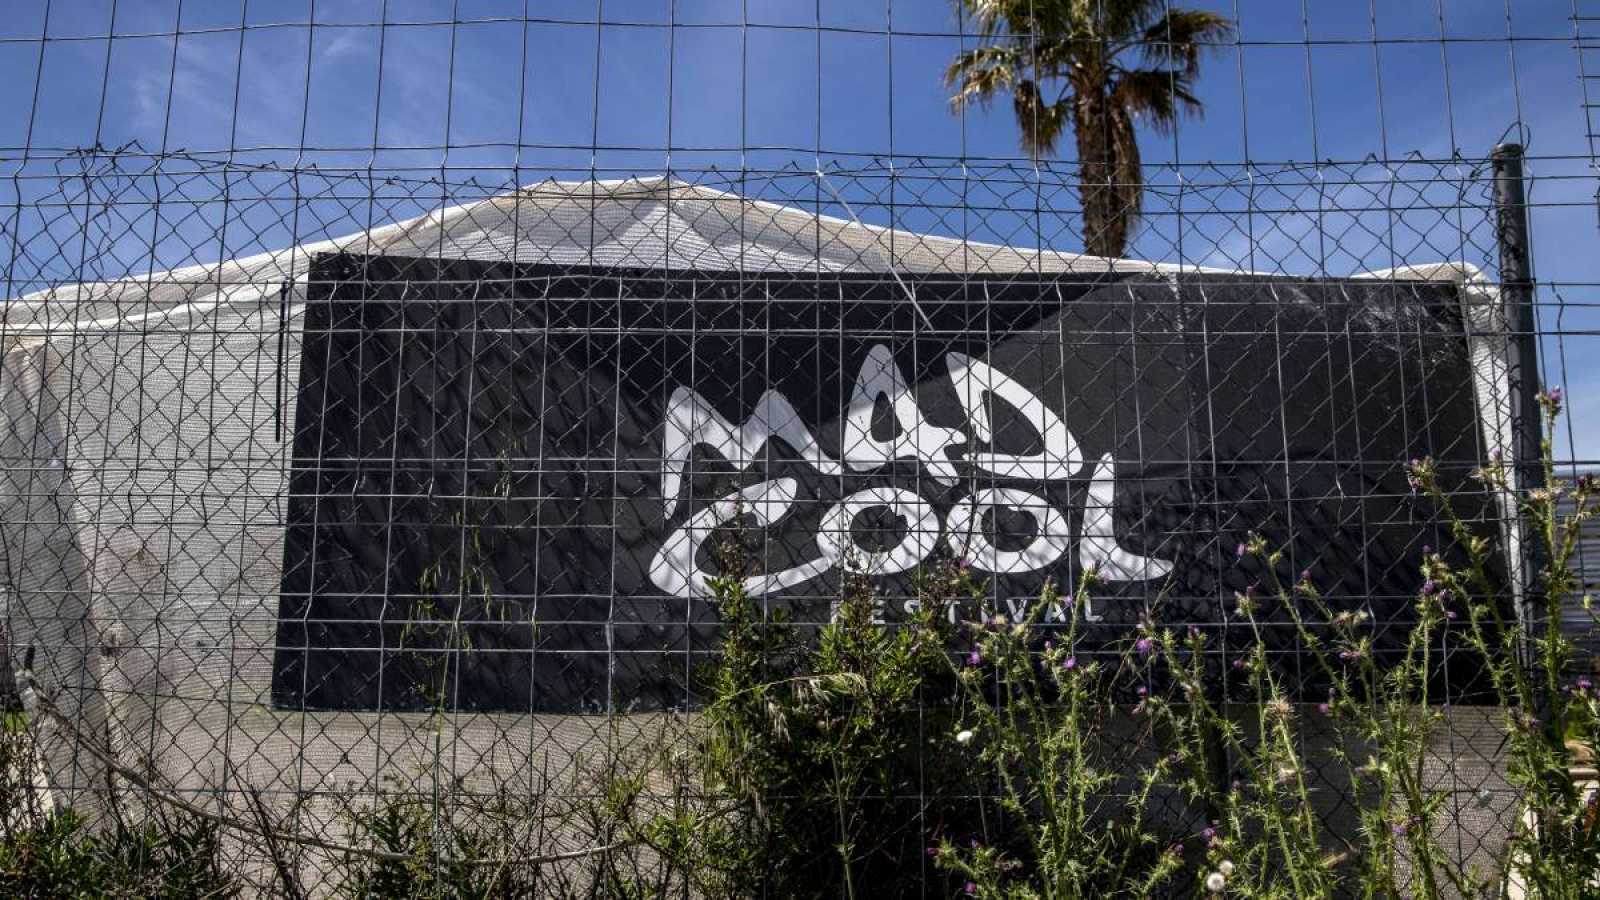 El Mad Cool Sunset 2022 se cancela